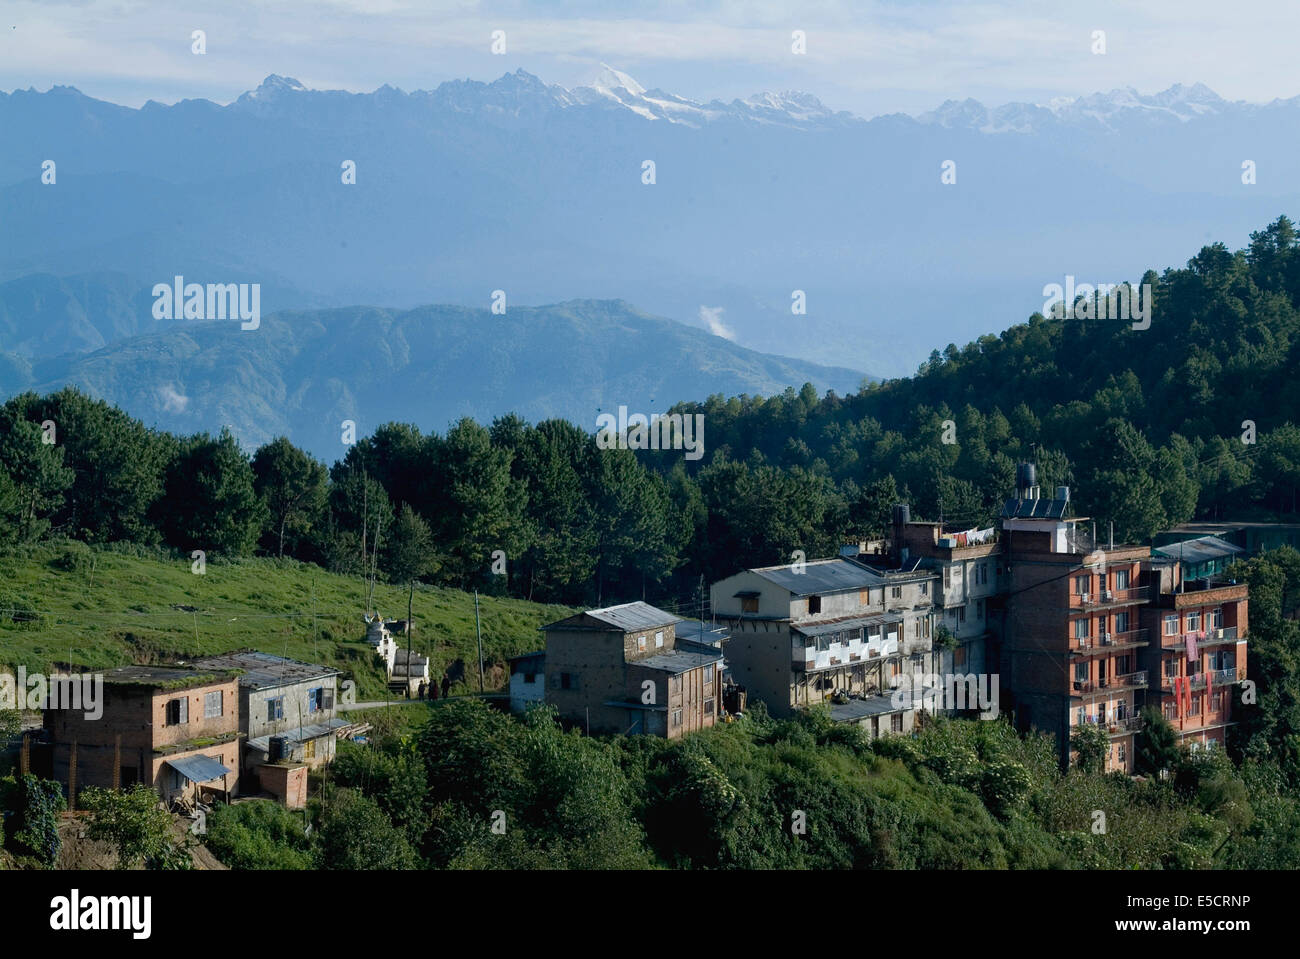 Nagarkot, a hill station and resort at the base of the Himalayan range, Nepal Stock Photo